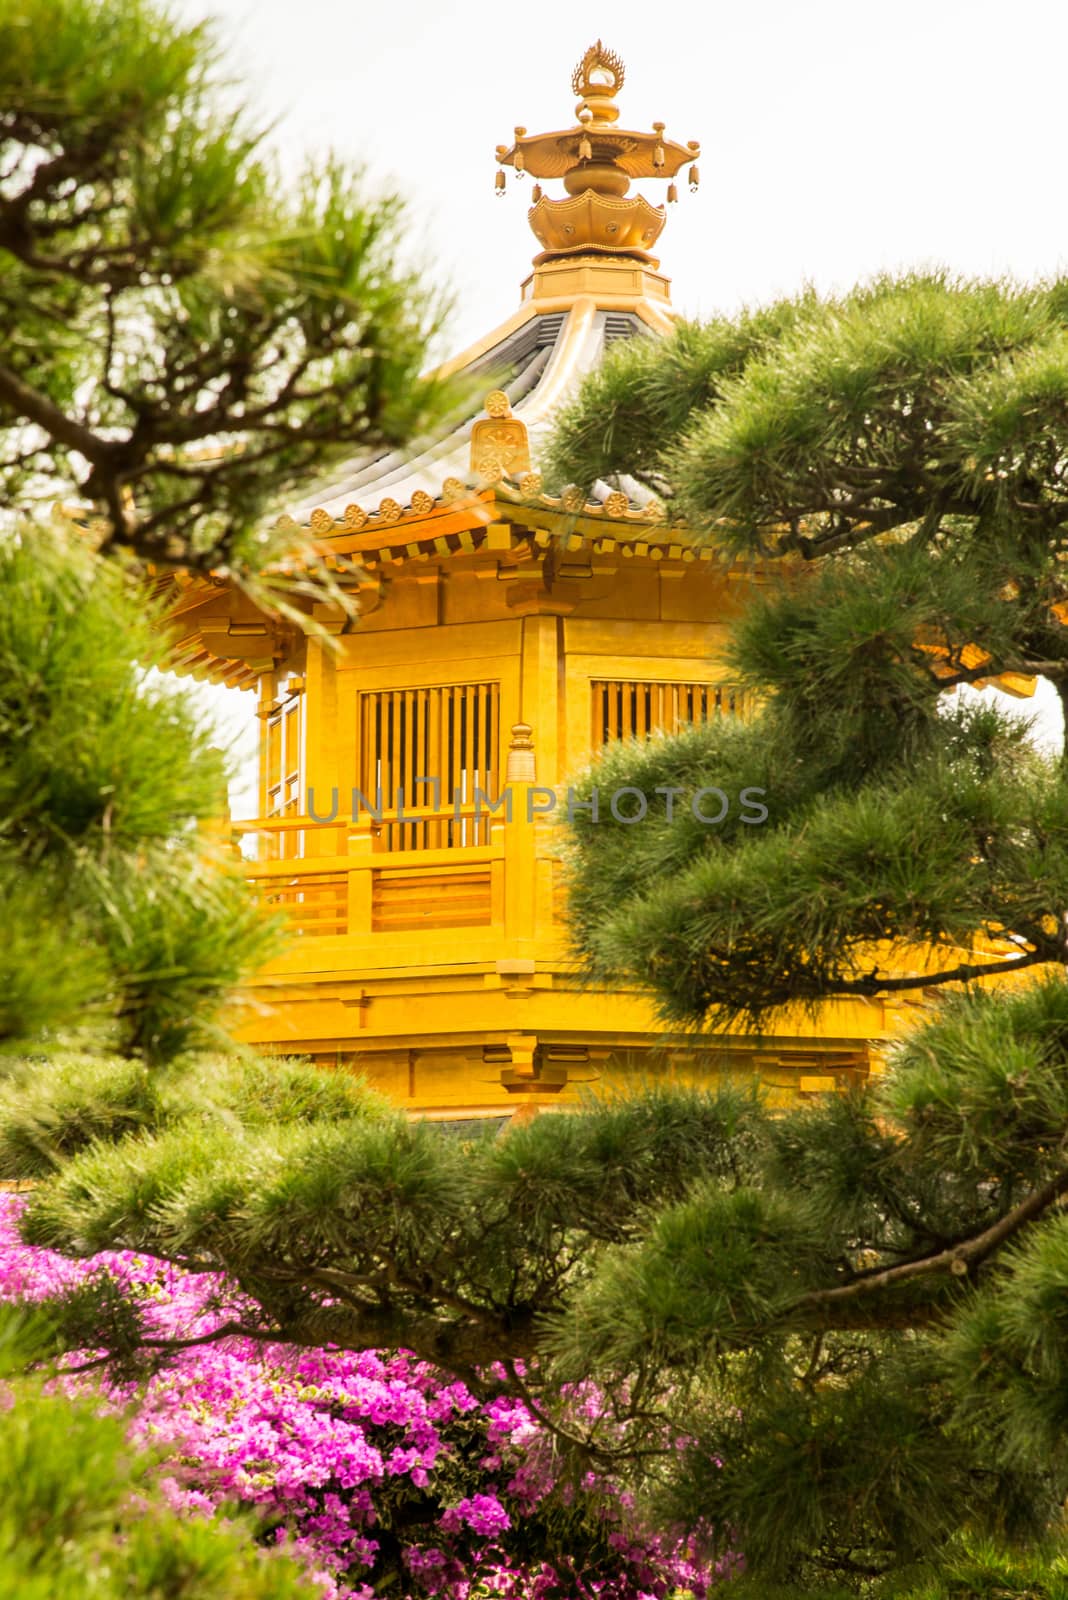 Beautiful Golden Pagoda Chinese style architecture in Nan Lian Garden, Hong Kong